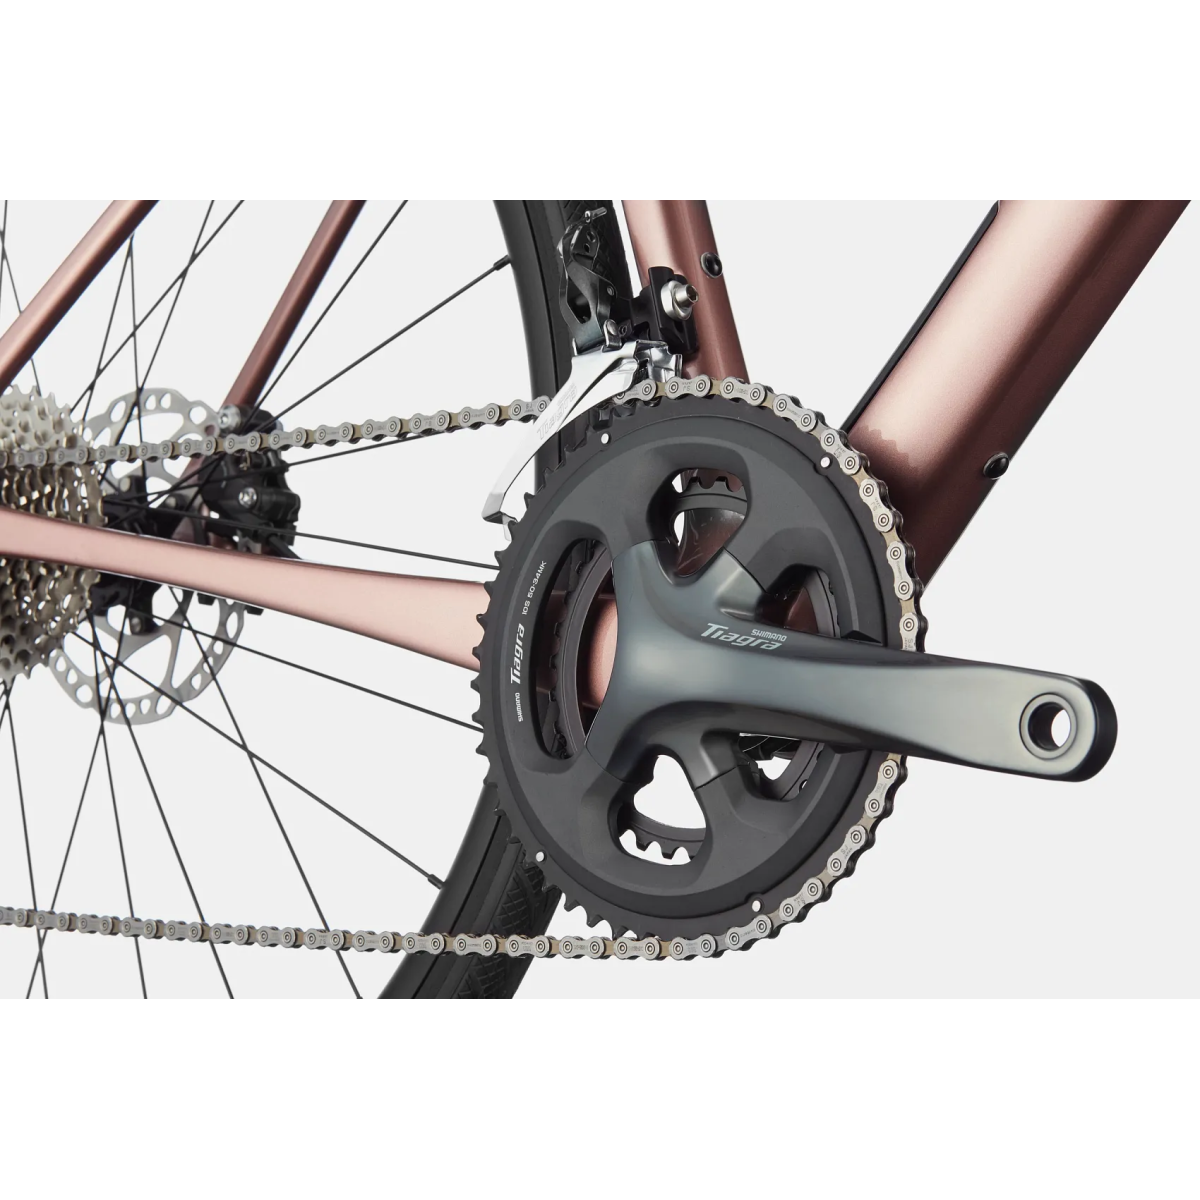 Cannondale Synapse Carbon 4 plento dviratis / Rose Gold